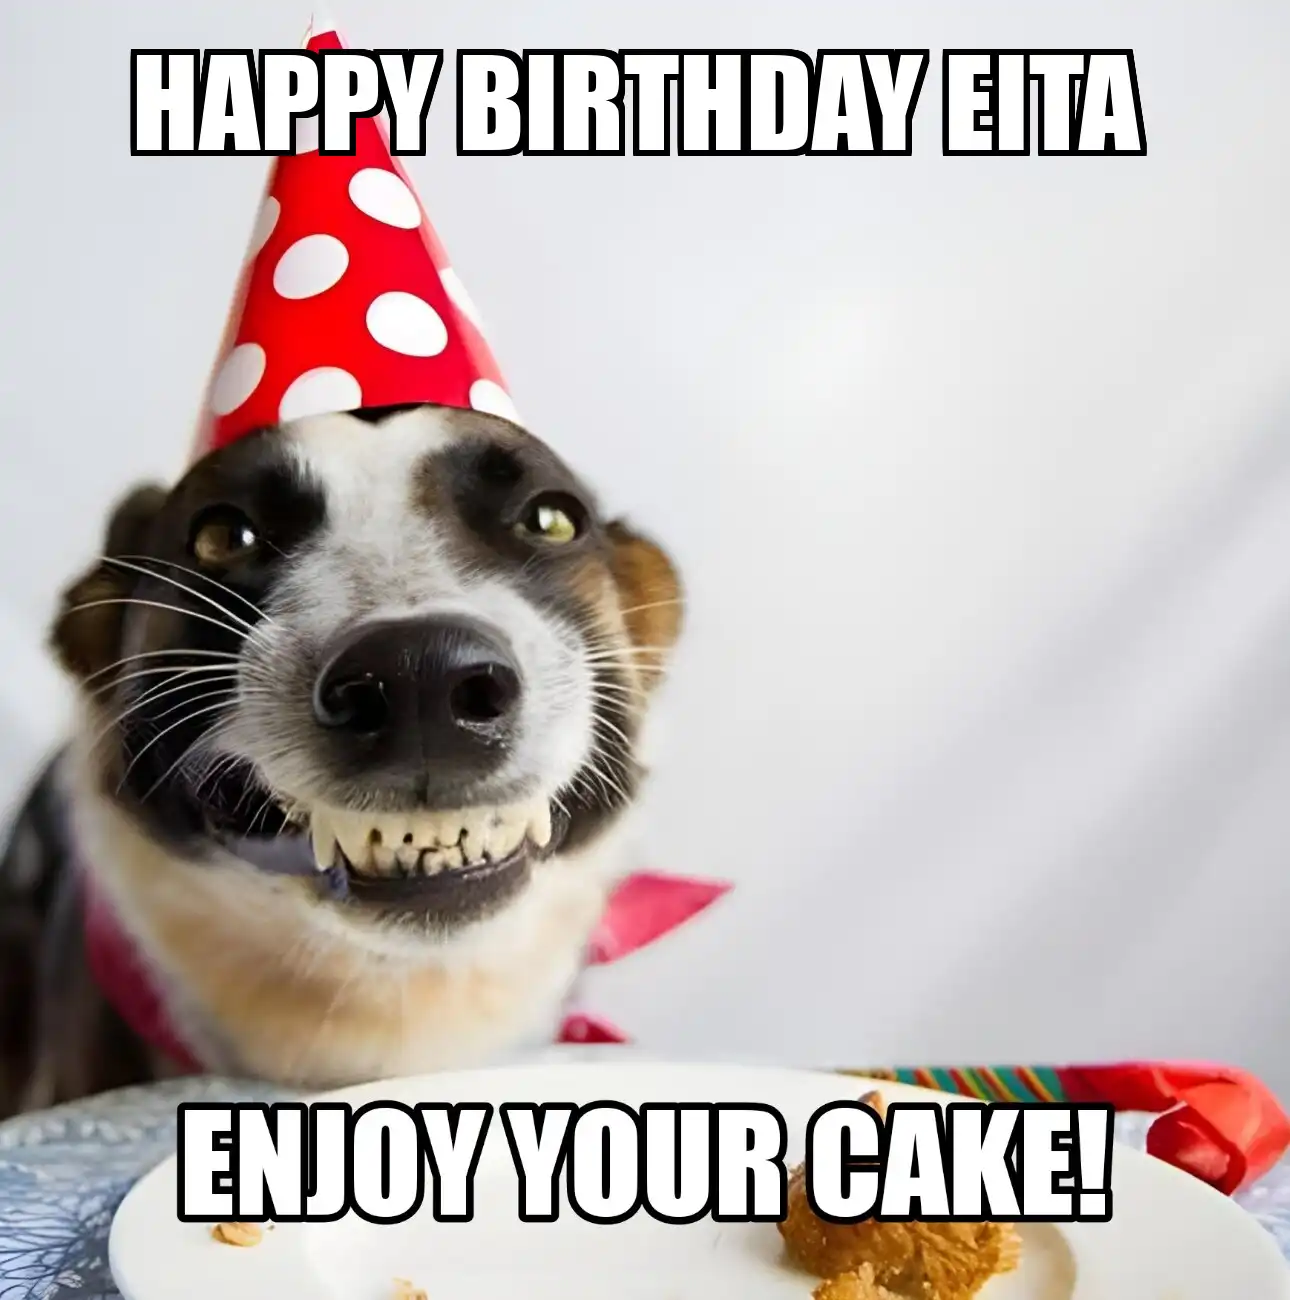 Happy Birthday Eita Enjoy Your Cake Dog Meme